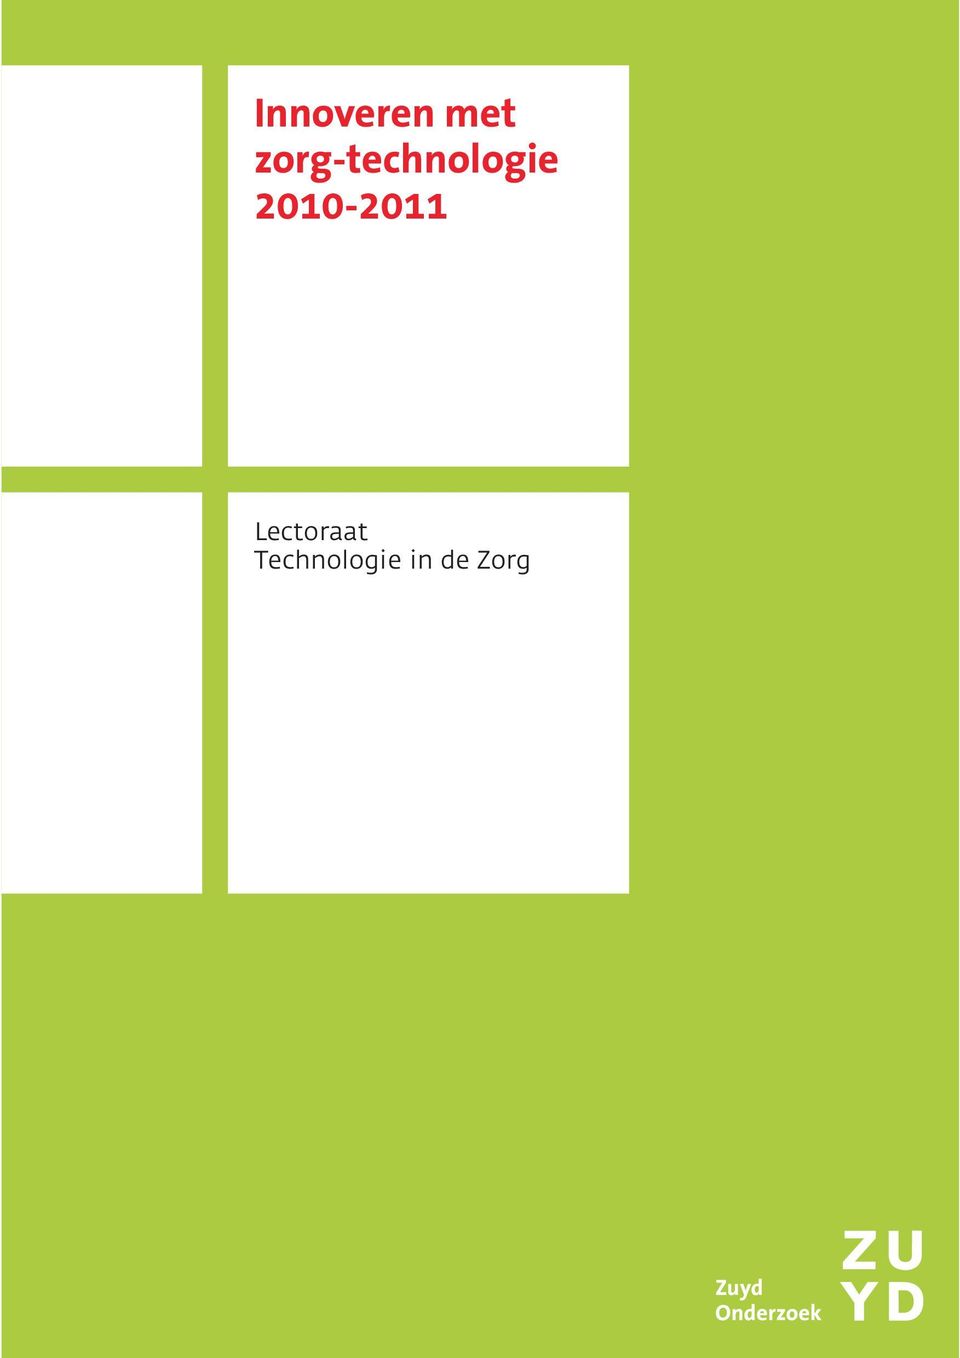 2010-2011 Lectoraat